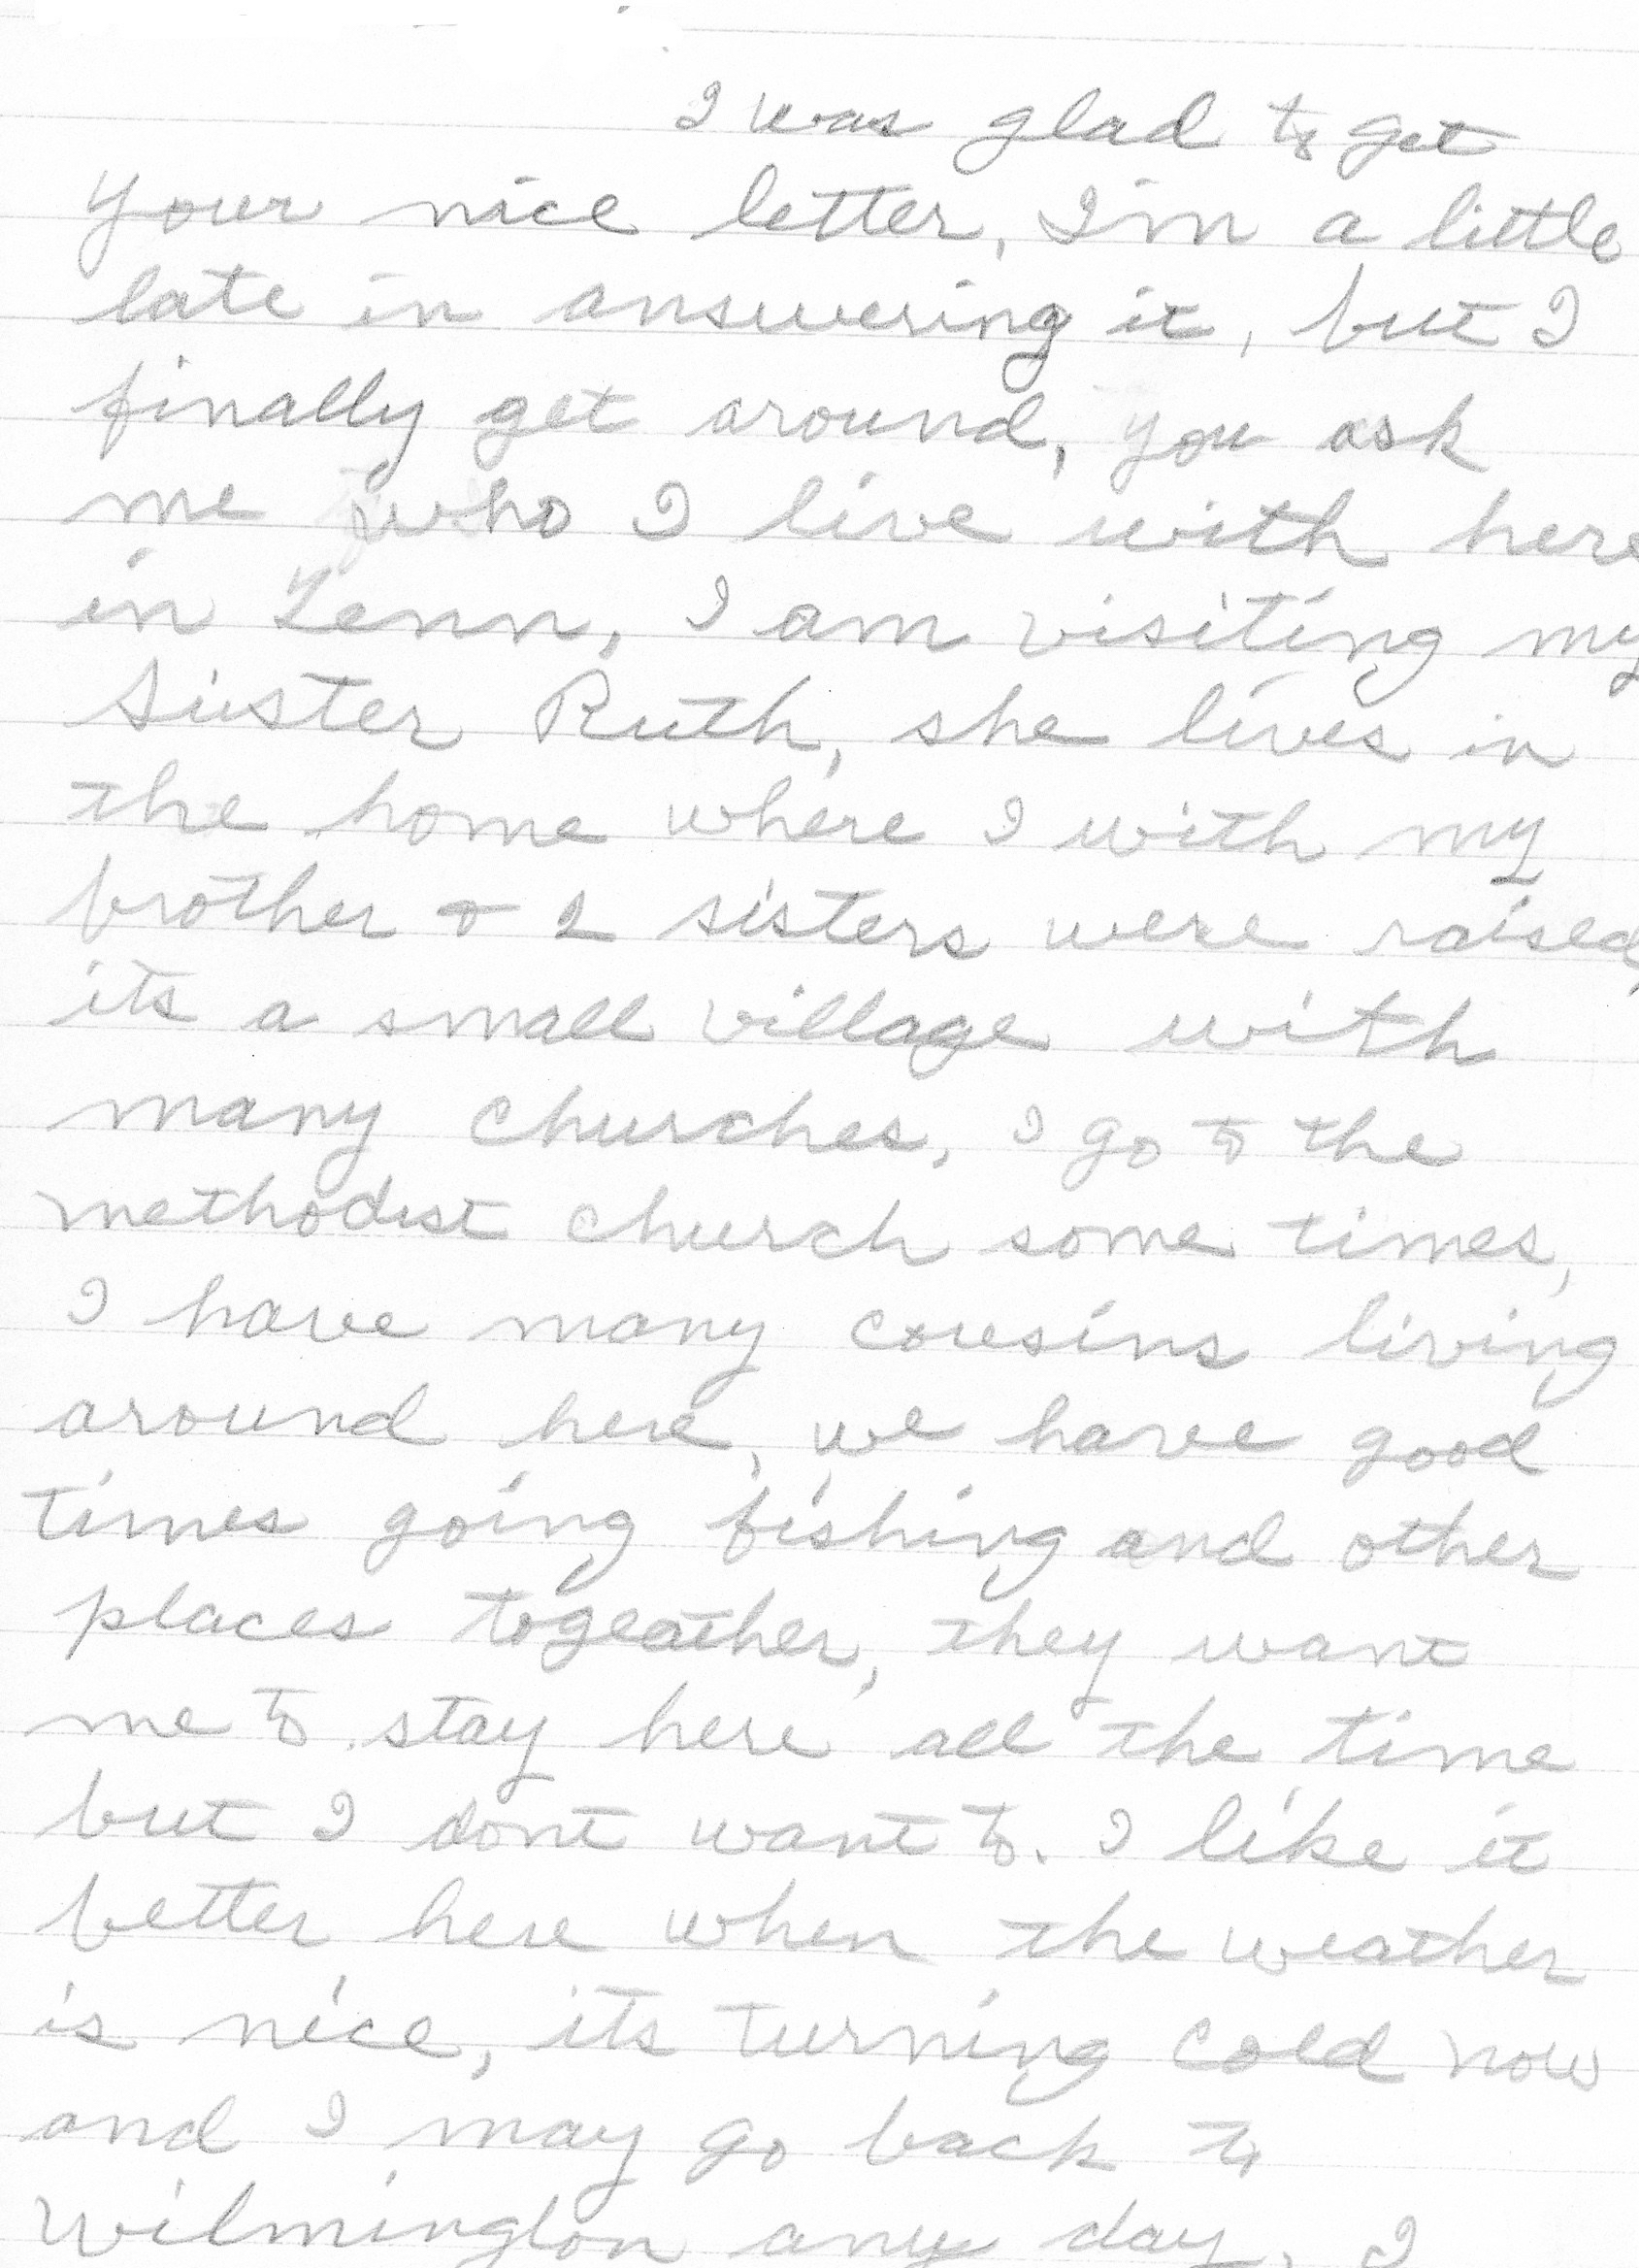 grammy letter 1966 pg 1